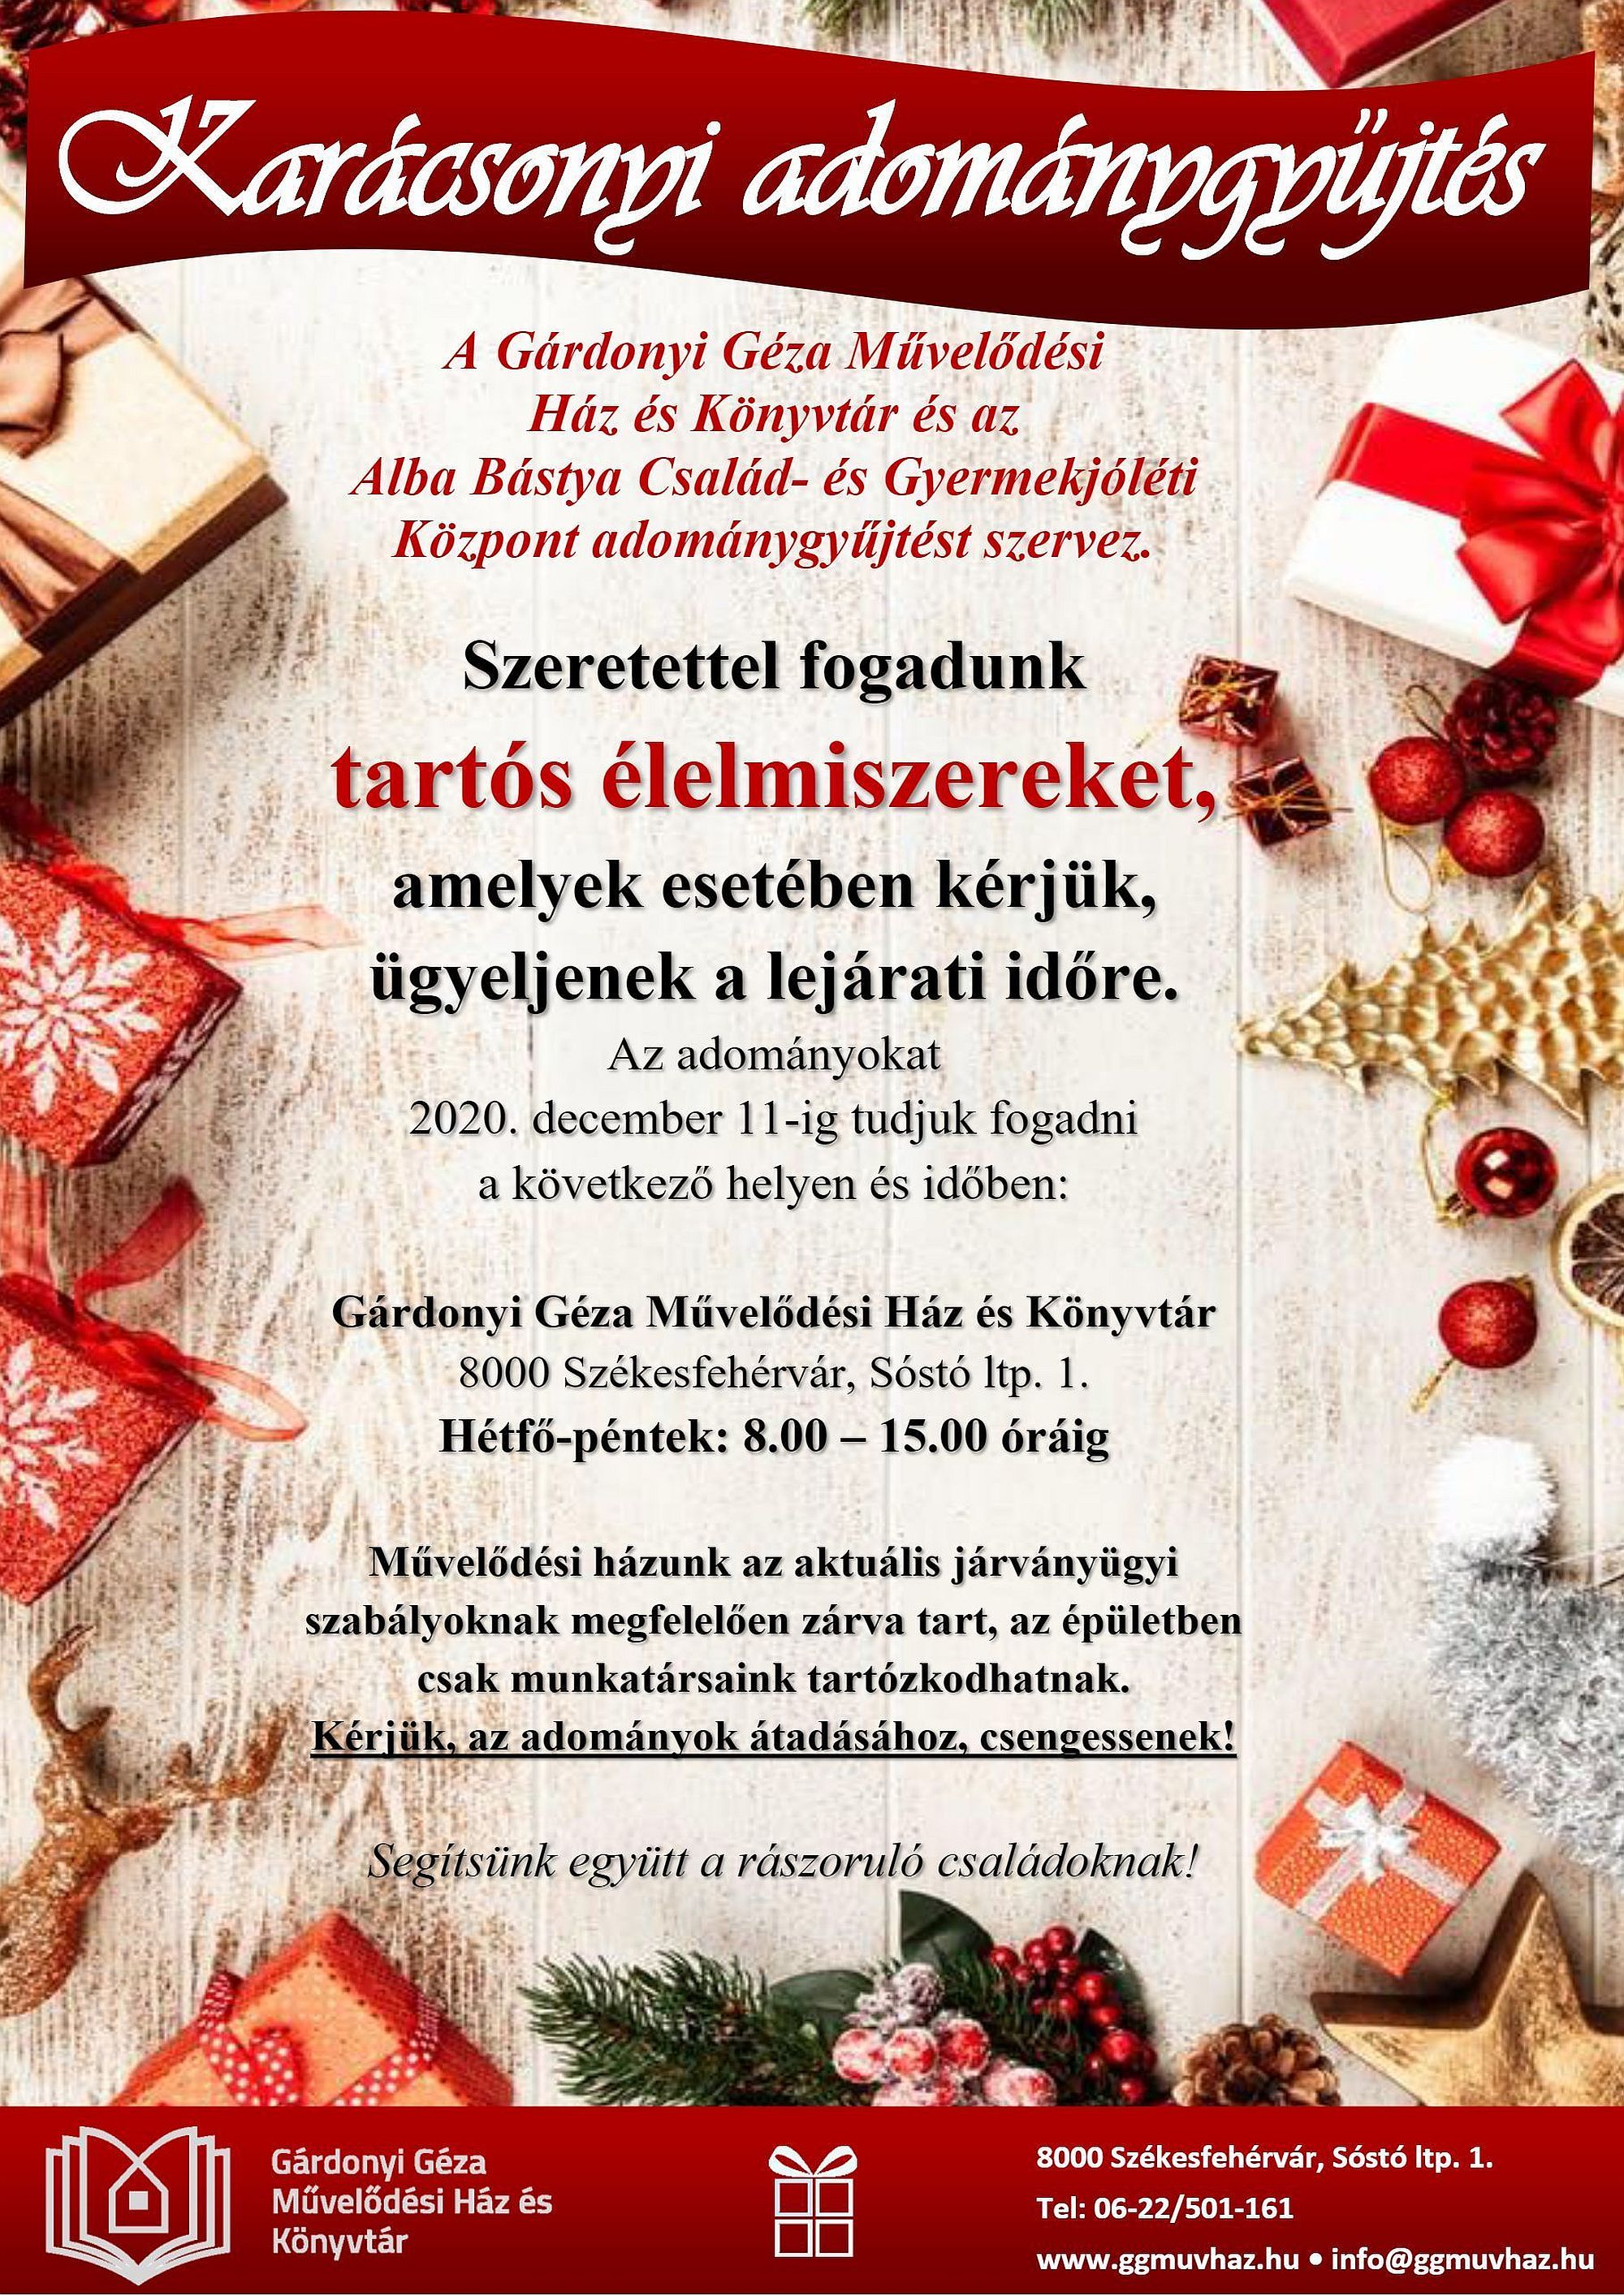 December 11-ig tart a karácsonyi adománygyűjtés a Gárdonyi Géza Művelődési Házban